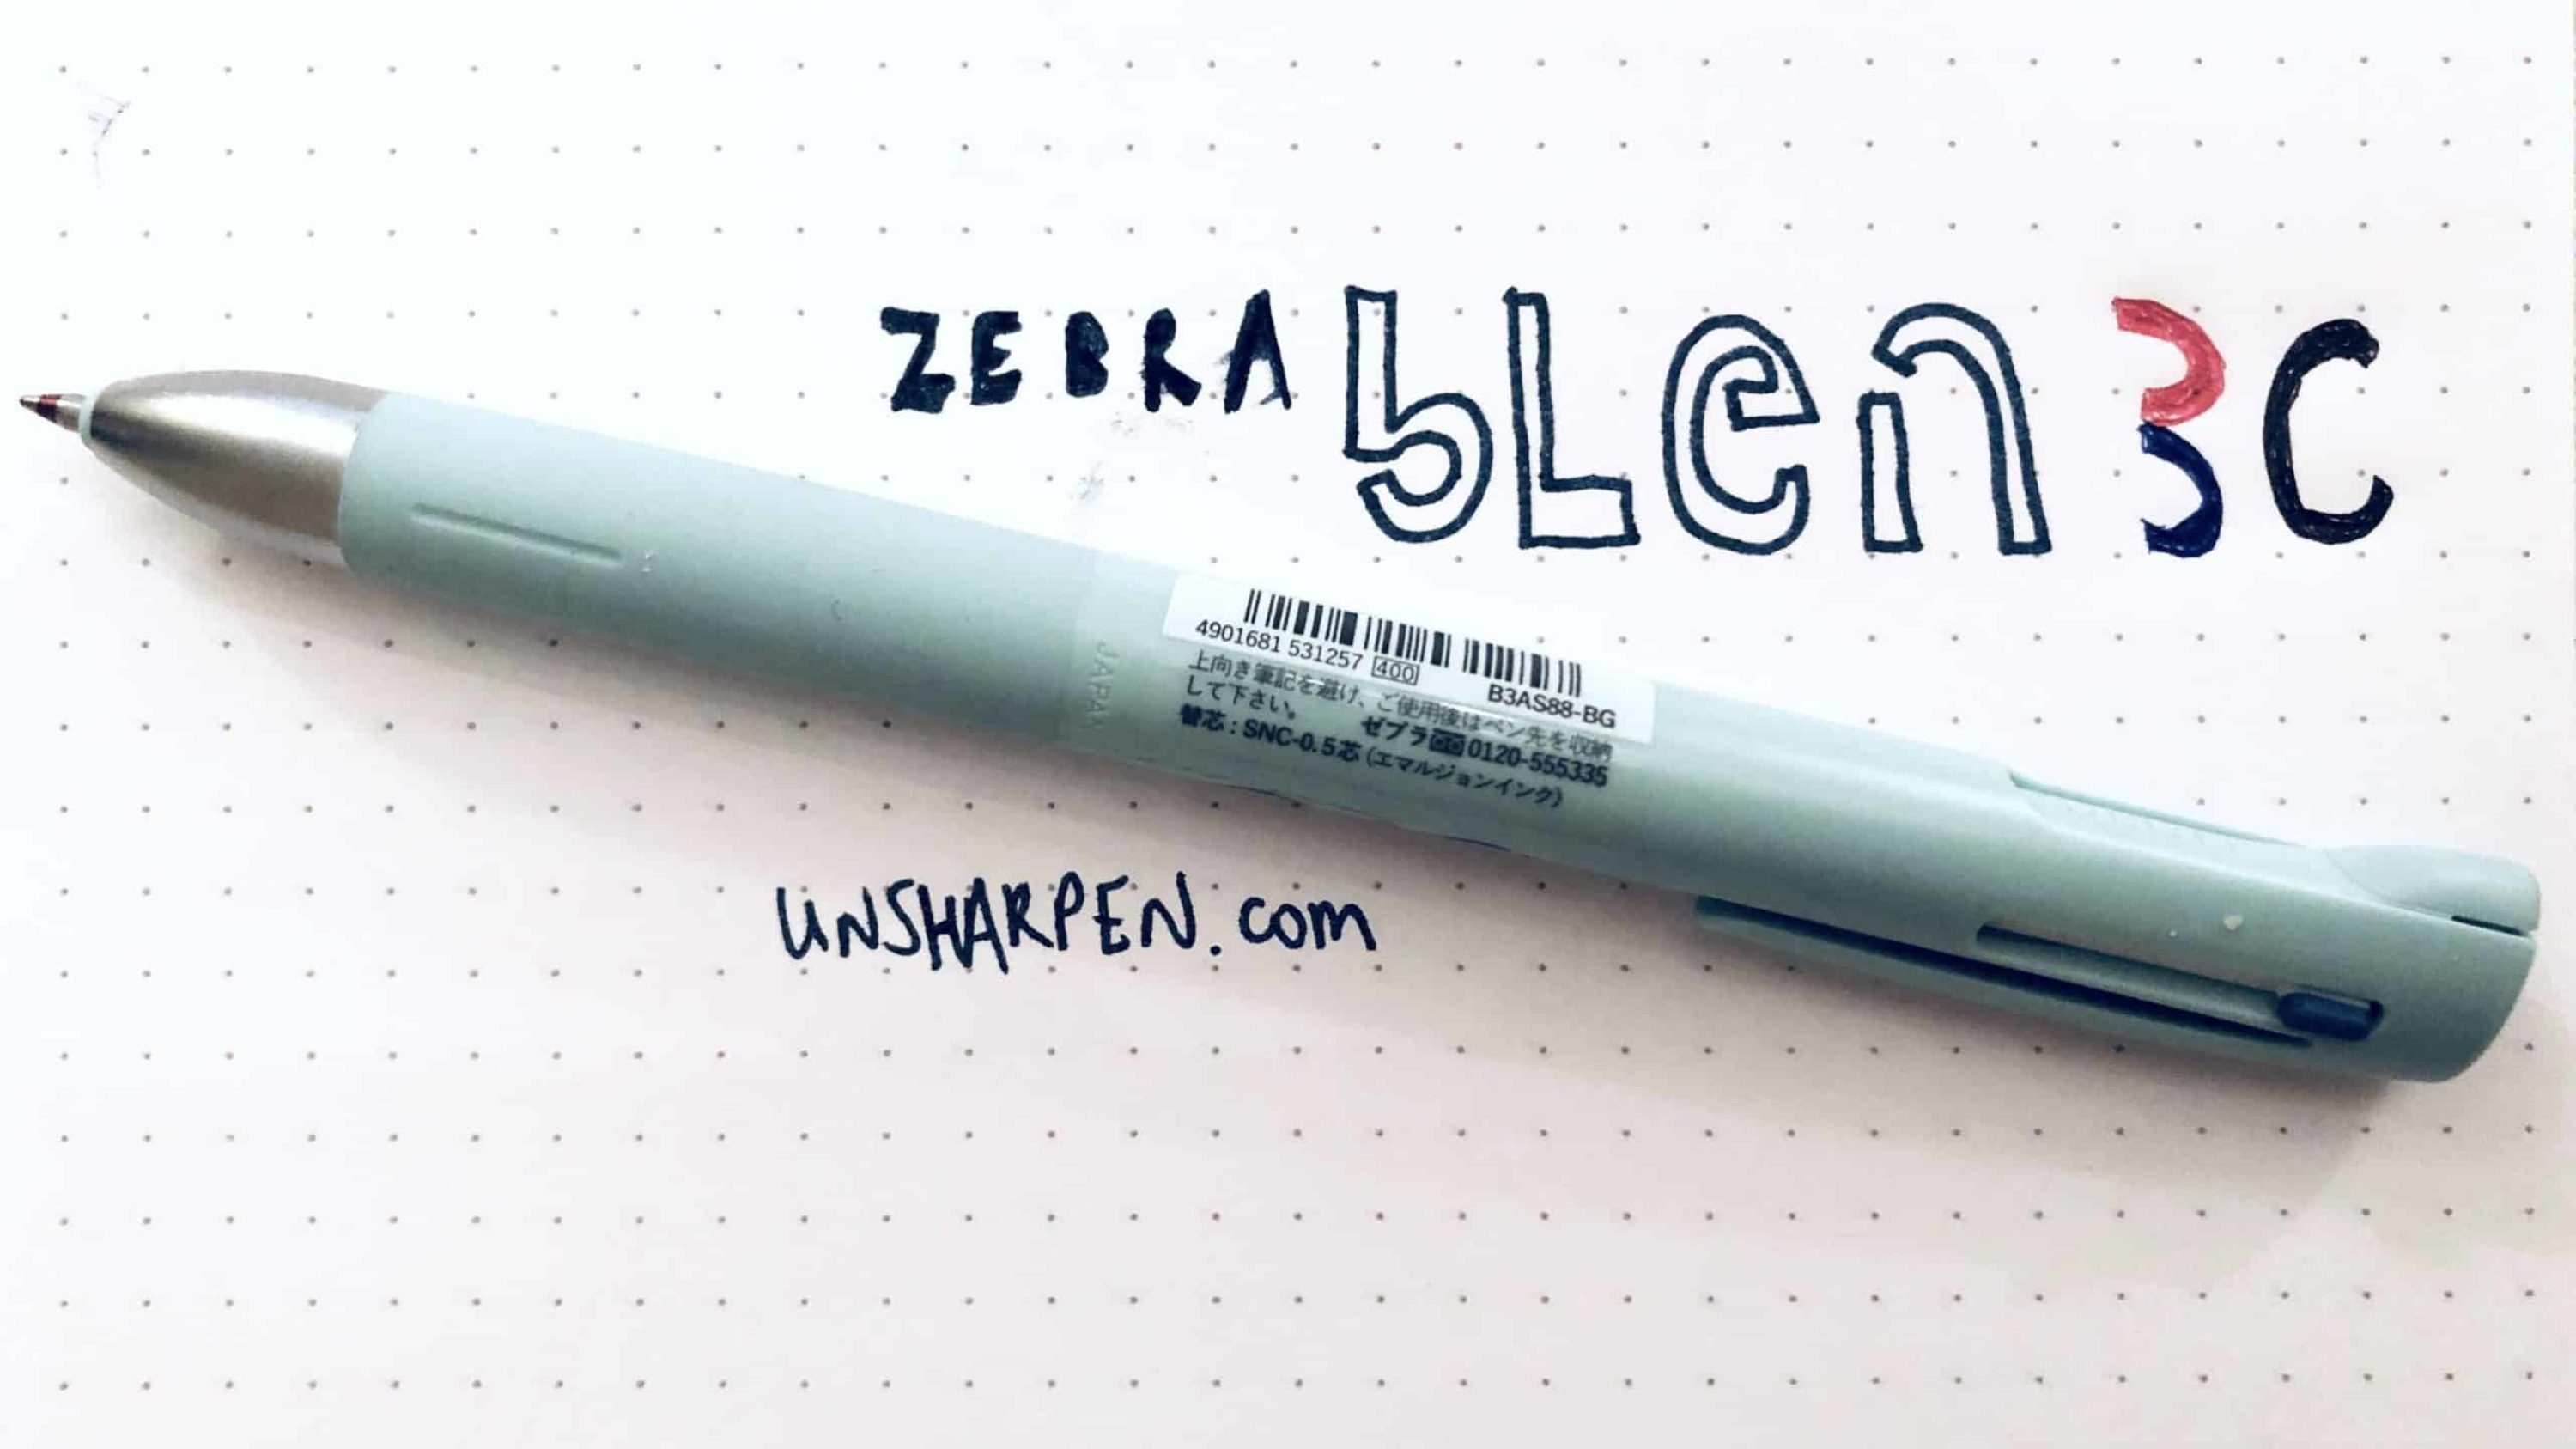 bLen Pen by Zebra